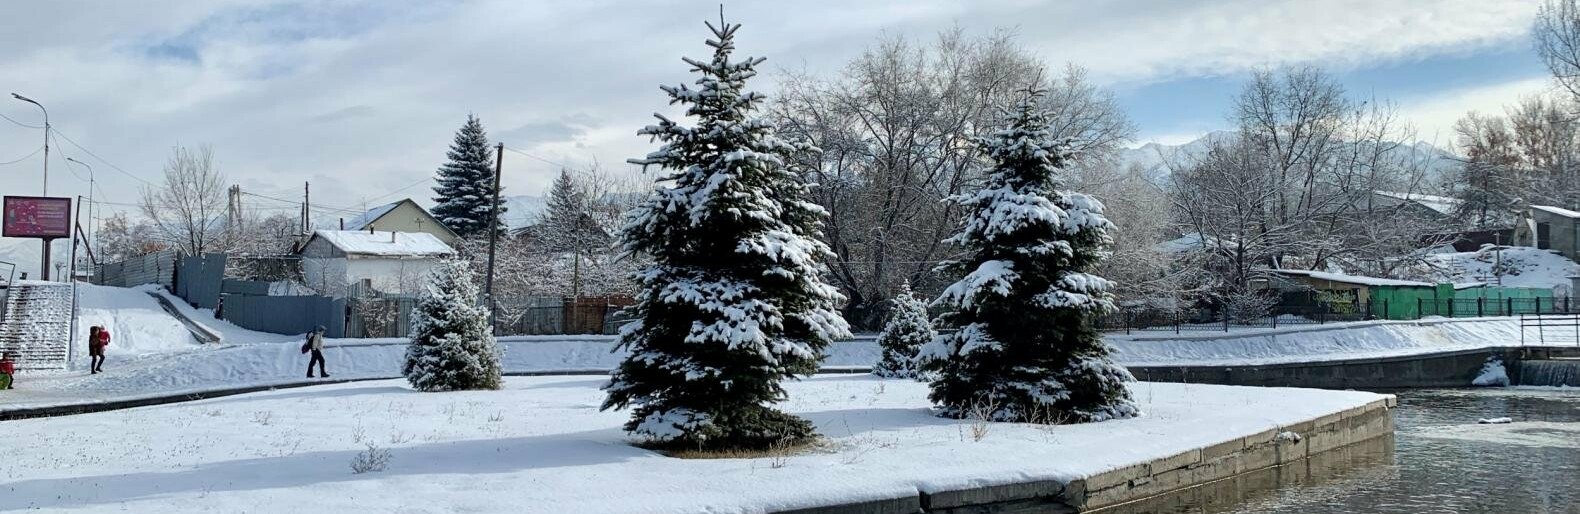 До 30 сантиметров снега выпало в предгорных районах Алматы